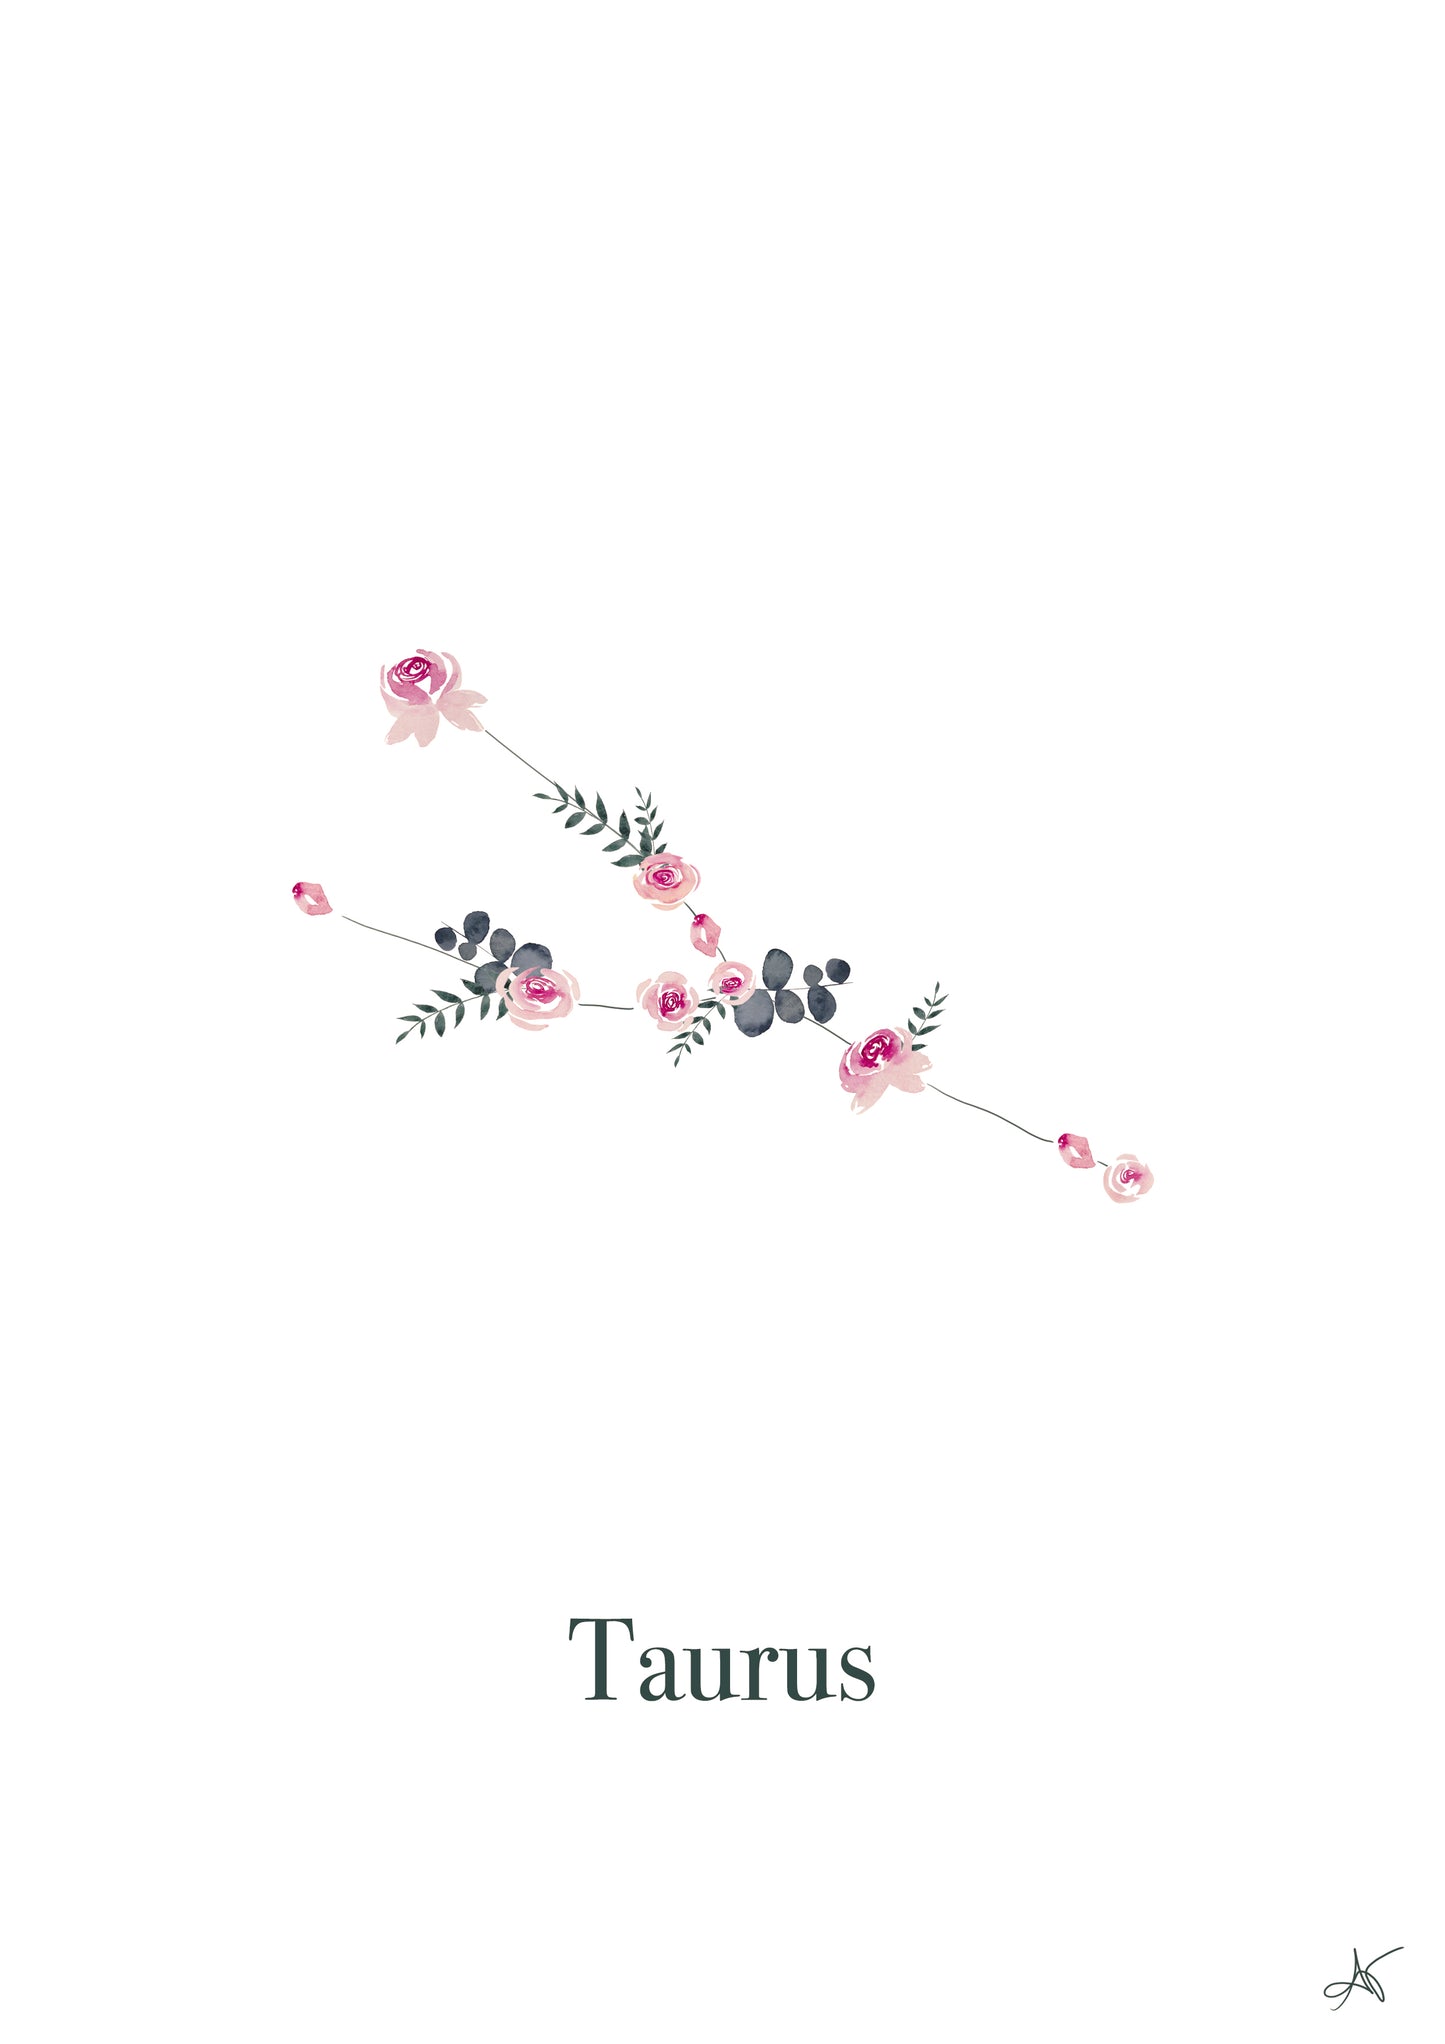 "Taurus" - Roses